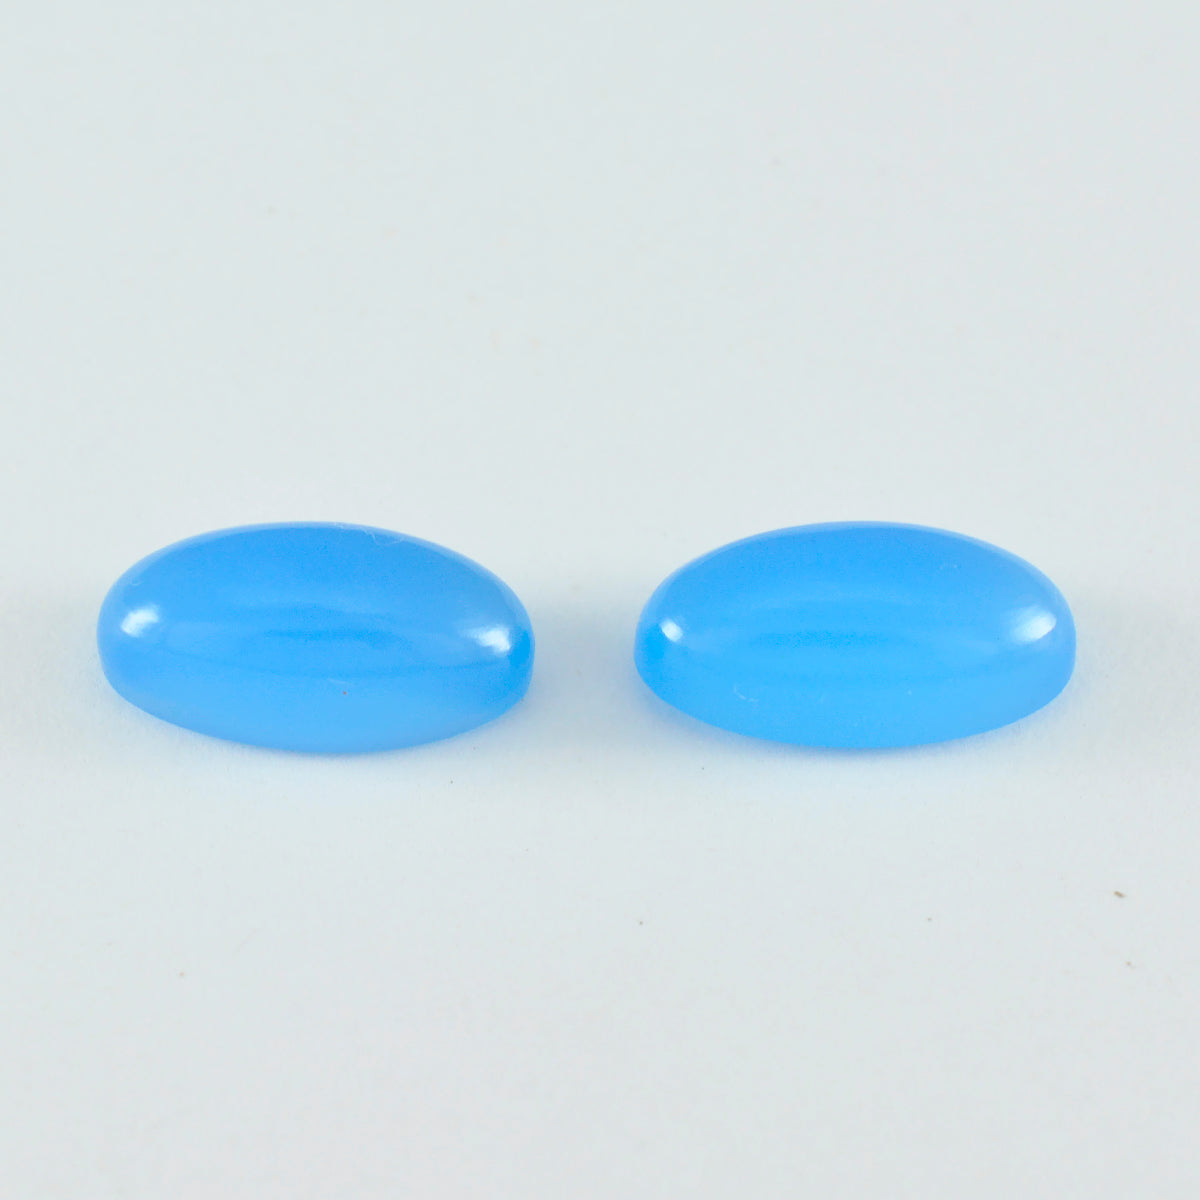 Riyogems 1 Stück blauer Chalcedon-Cabochon, 7 x 14 mm, ovale Form, süße, lose Edelsteine